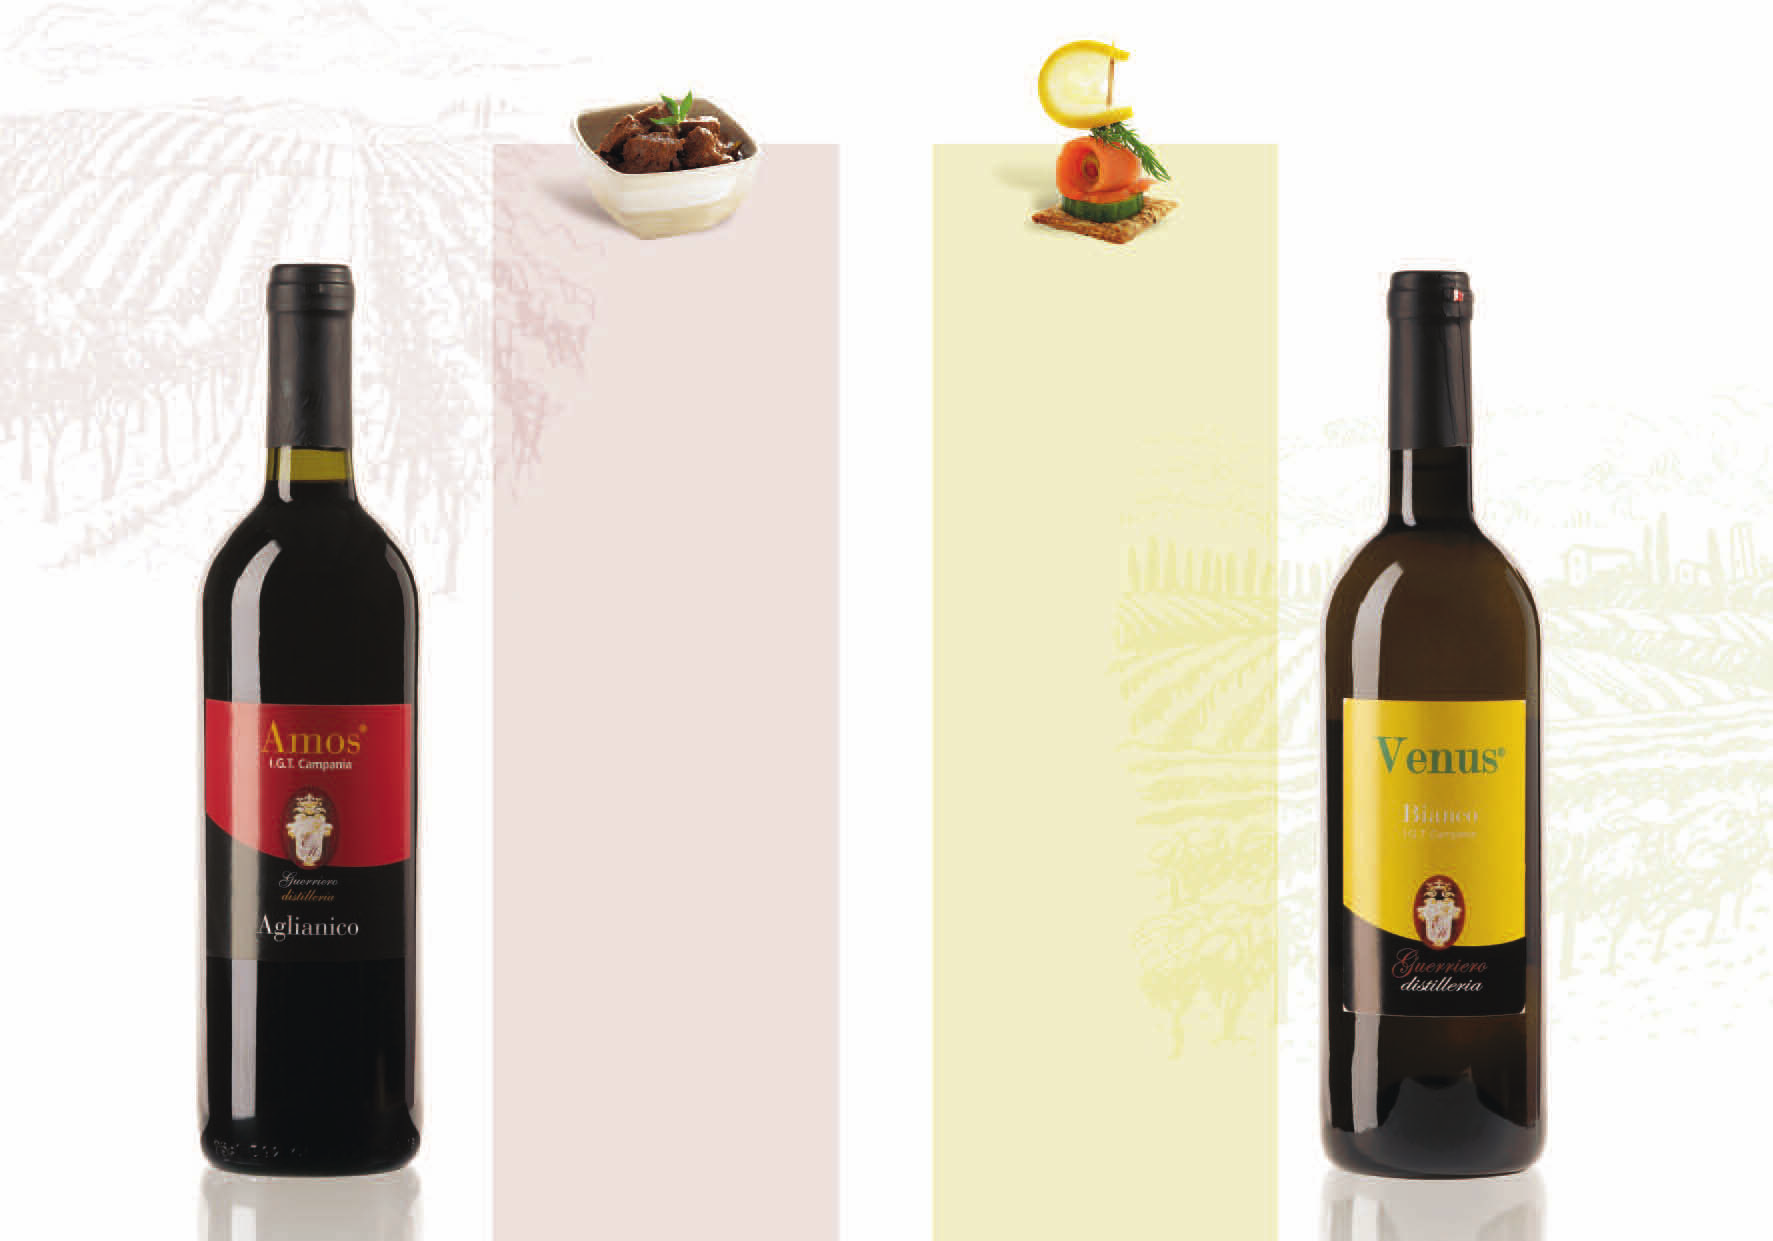 venus vino bianco Venus nasce esclusivamente da vigne curate con pratiche enologiche, nel rispetto dell ambiente. Il colore ambrato giallo paglierino e il profumo intenso denotano la nobiltà del vino.